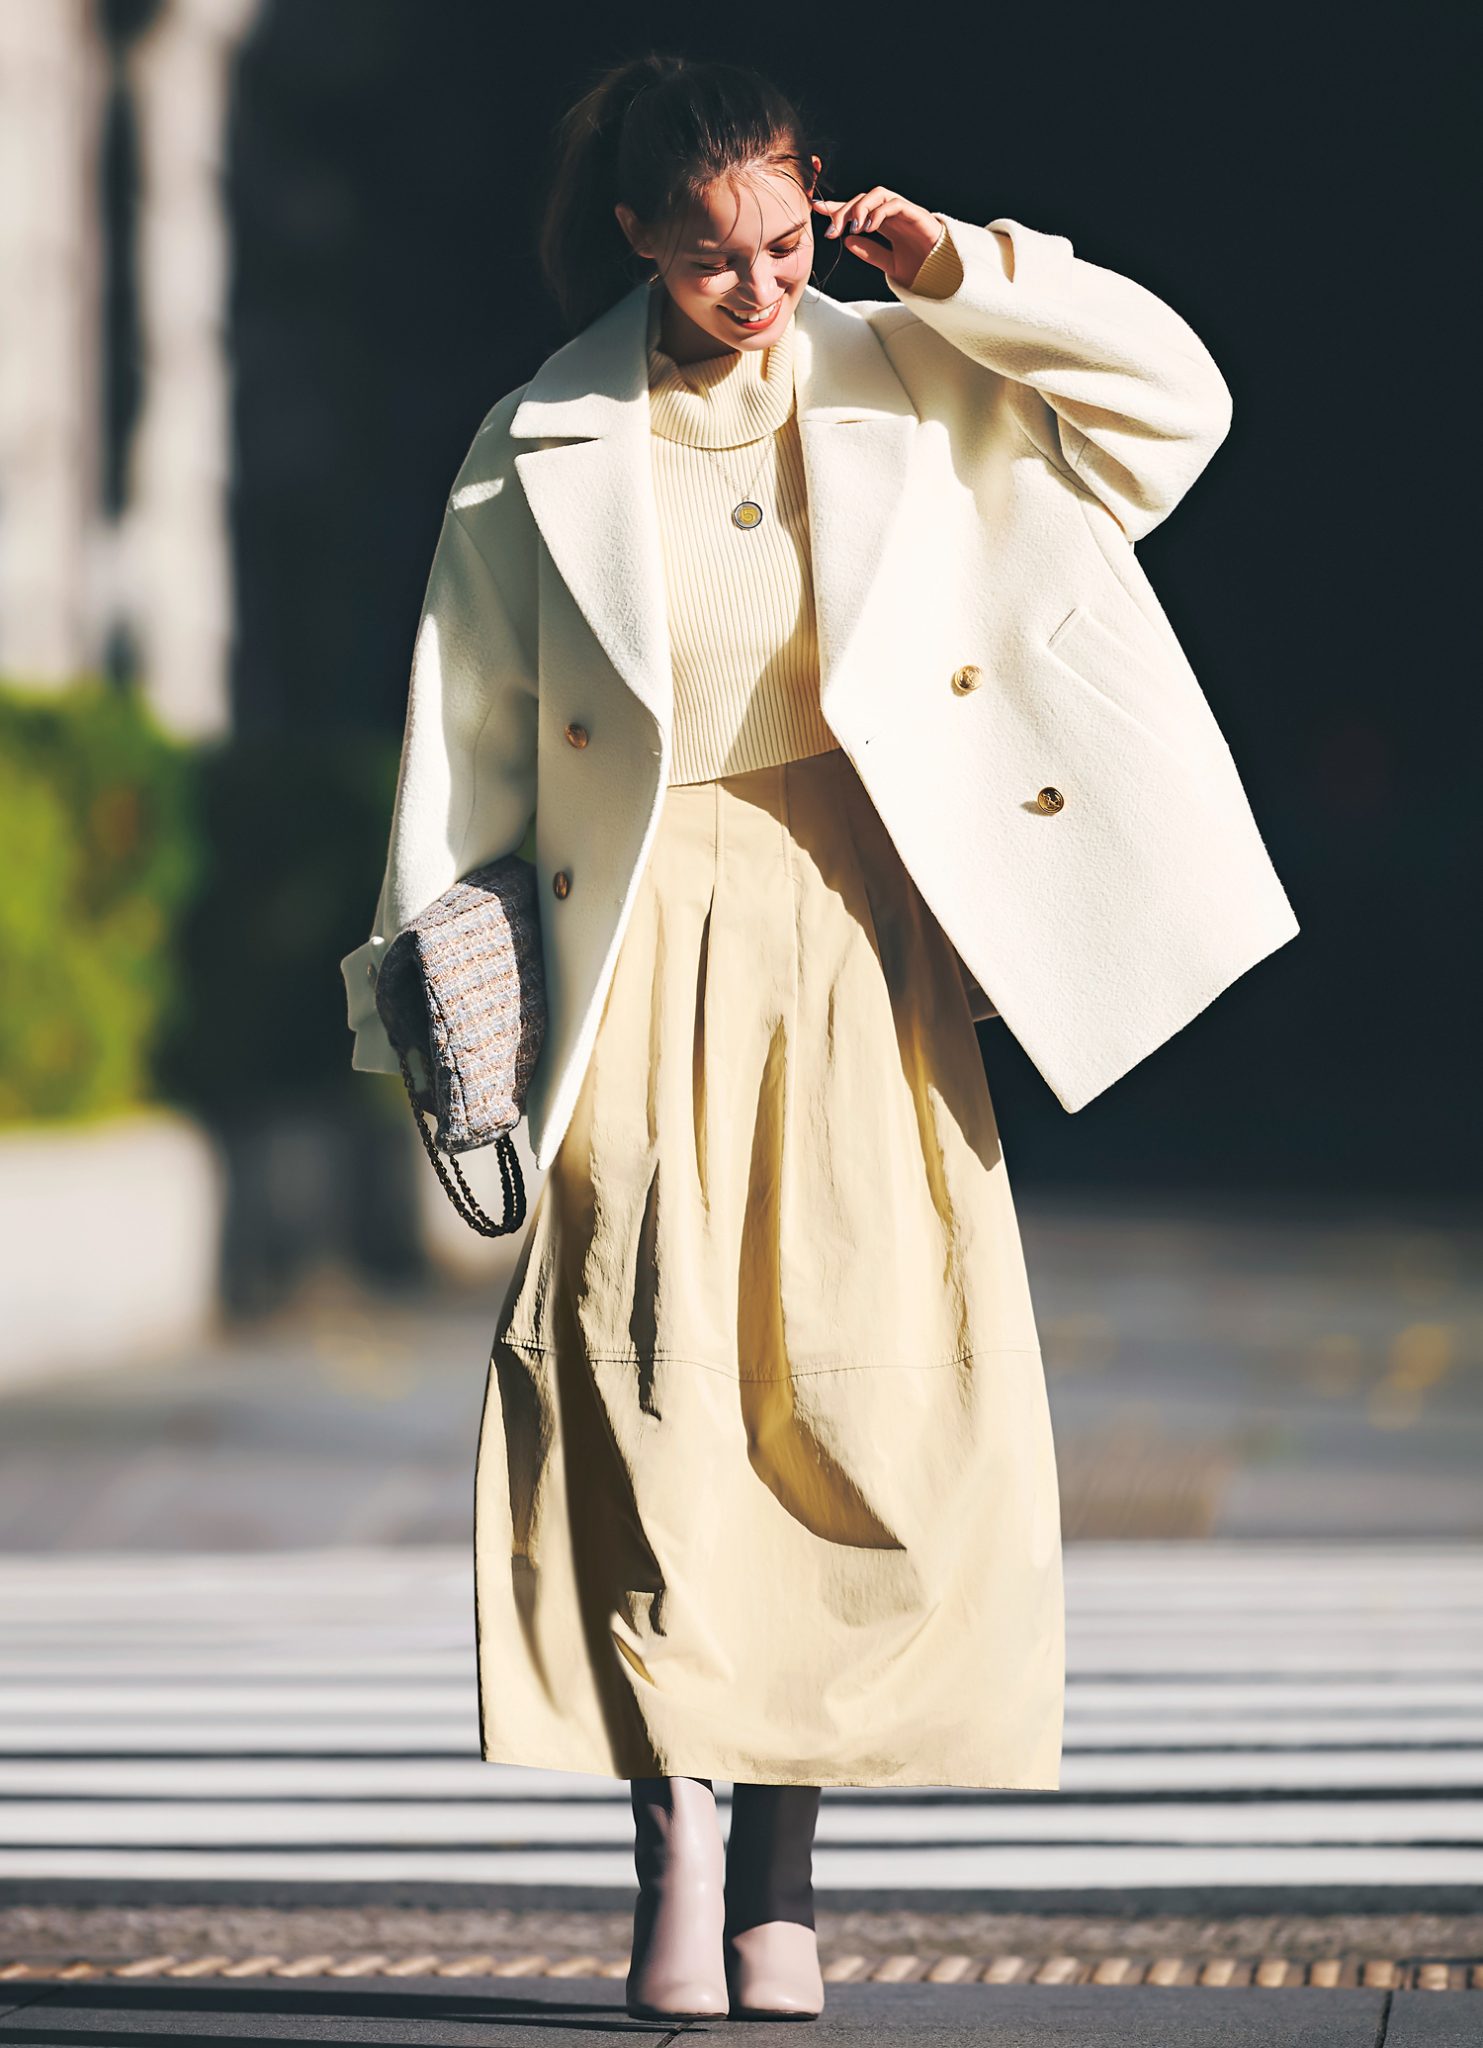 Cherie Mona リボン トレンチコート 白 女性 冬服 春服 かわいい